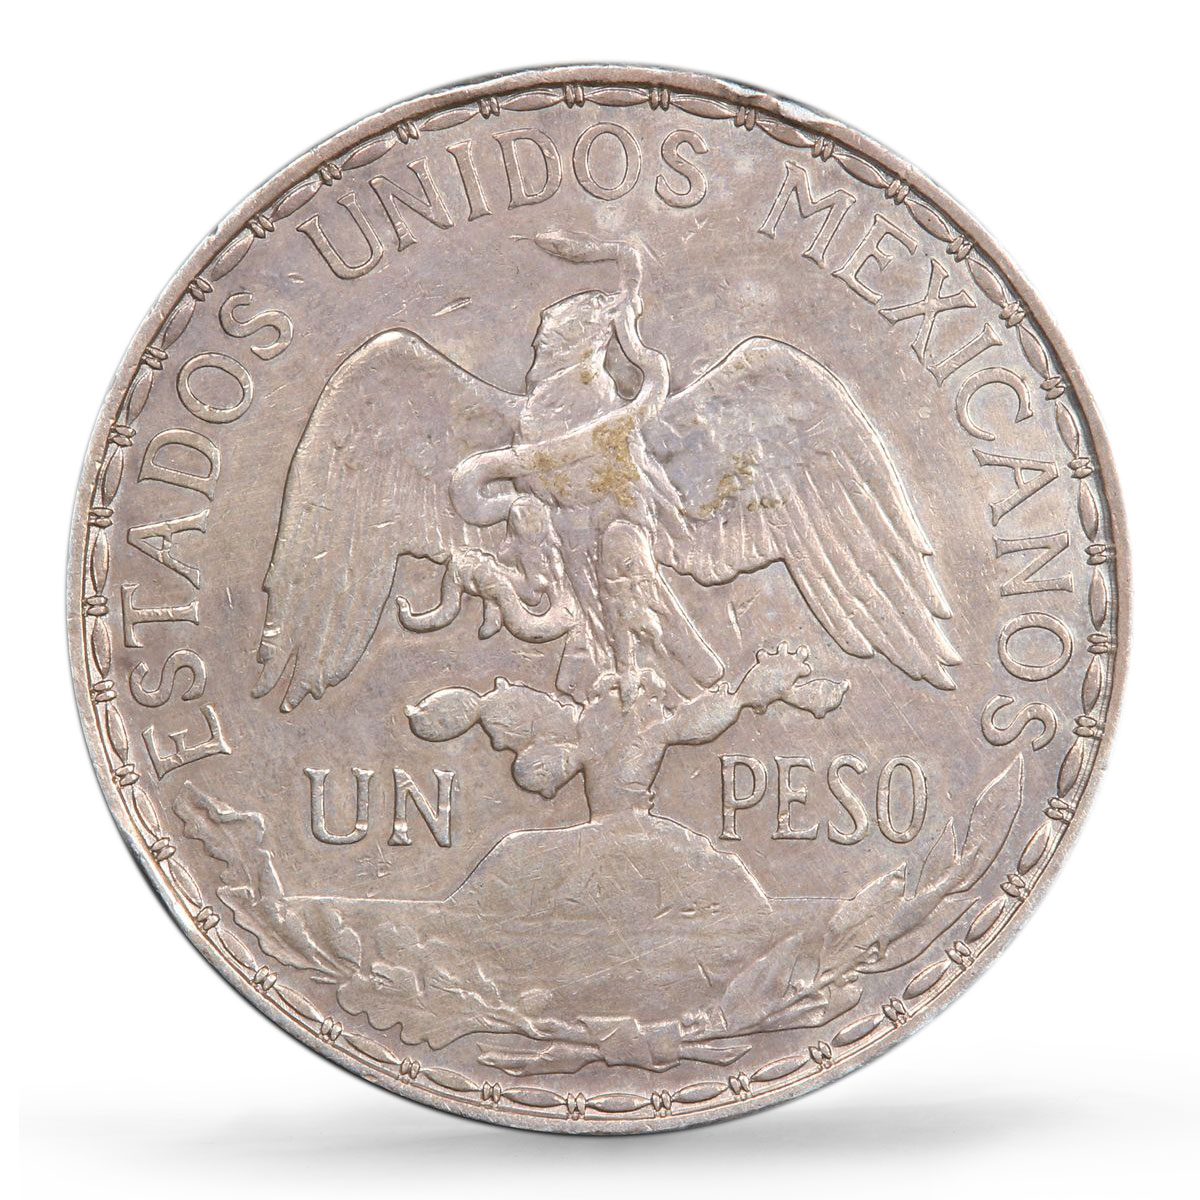 Mexico 1 peso Caballito Long Ray Horse Rider KM-453 AU PCGS silver coin 1910